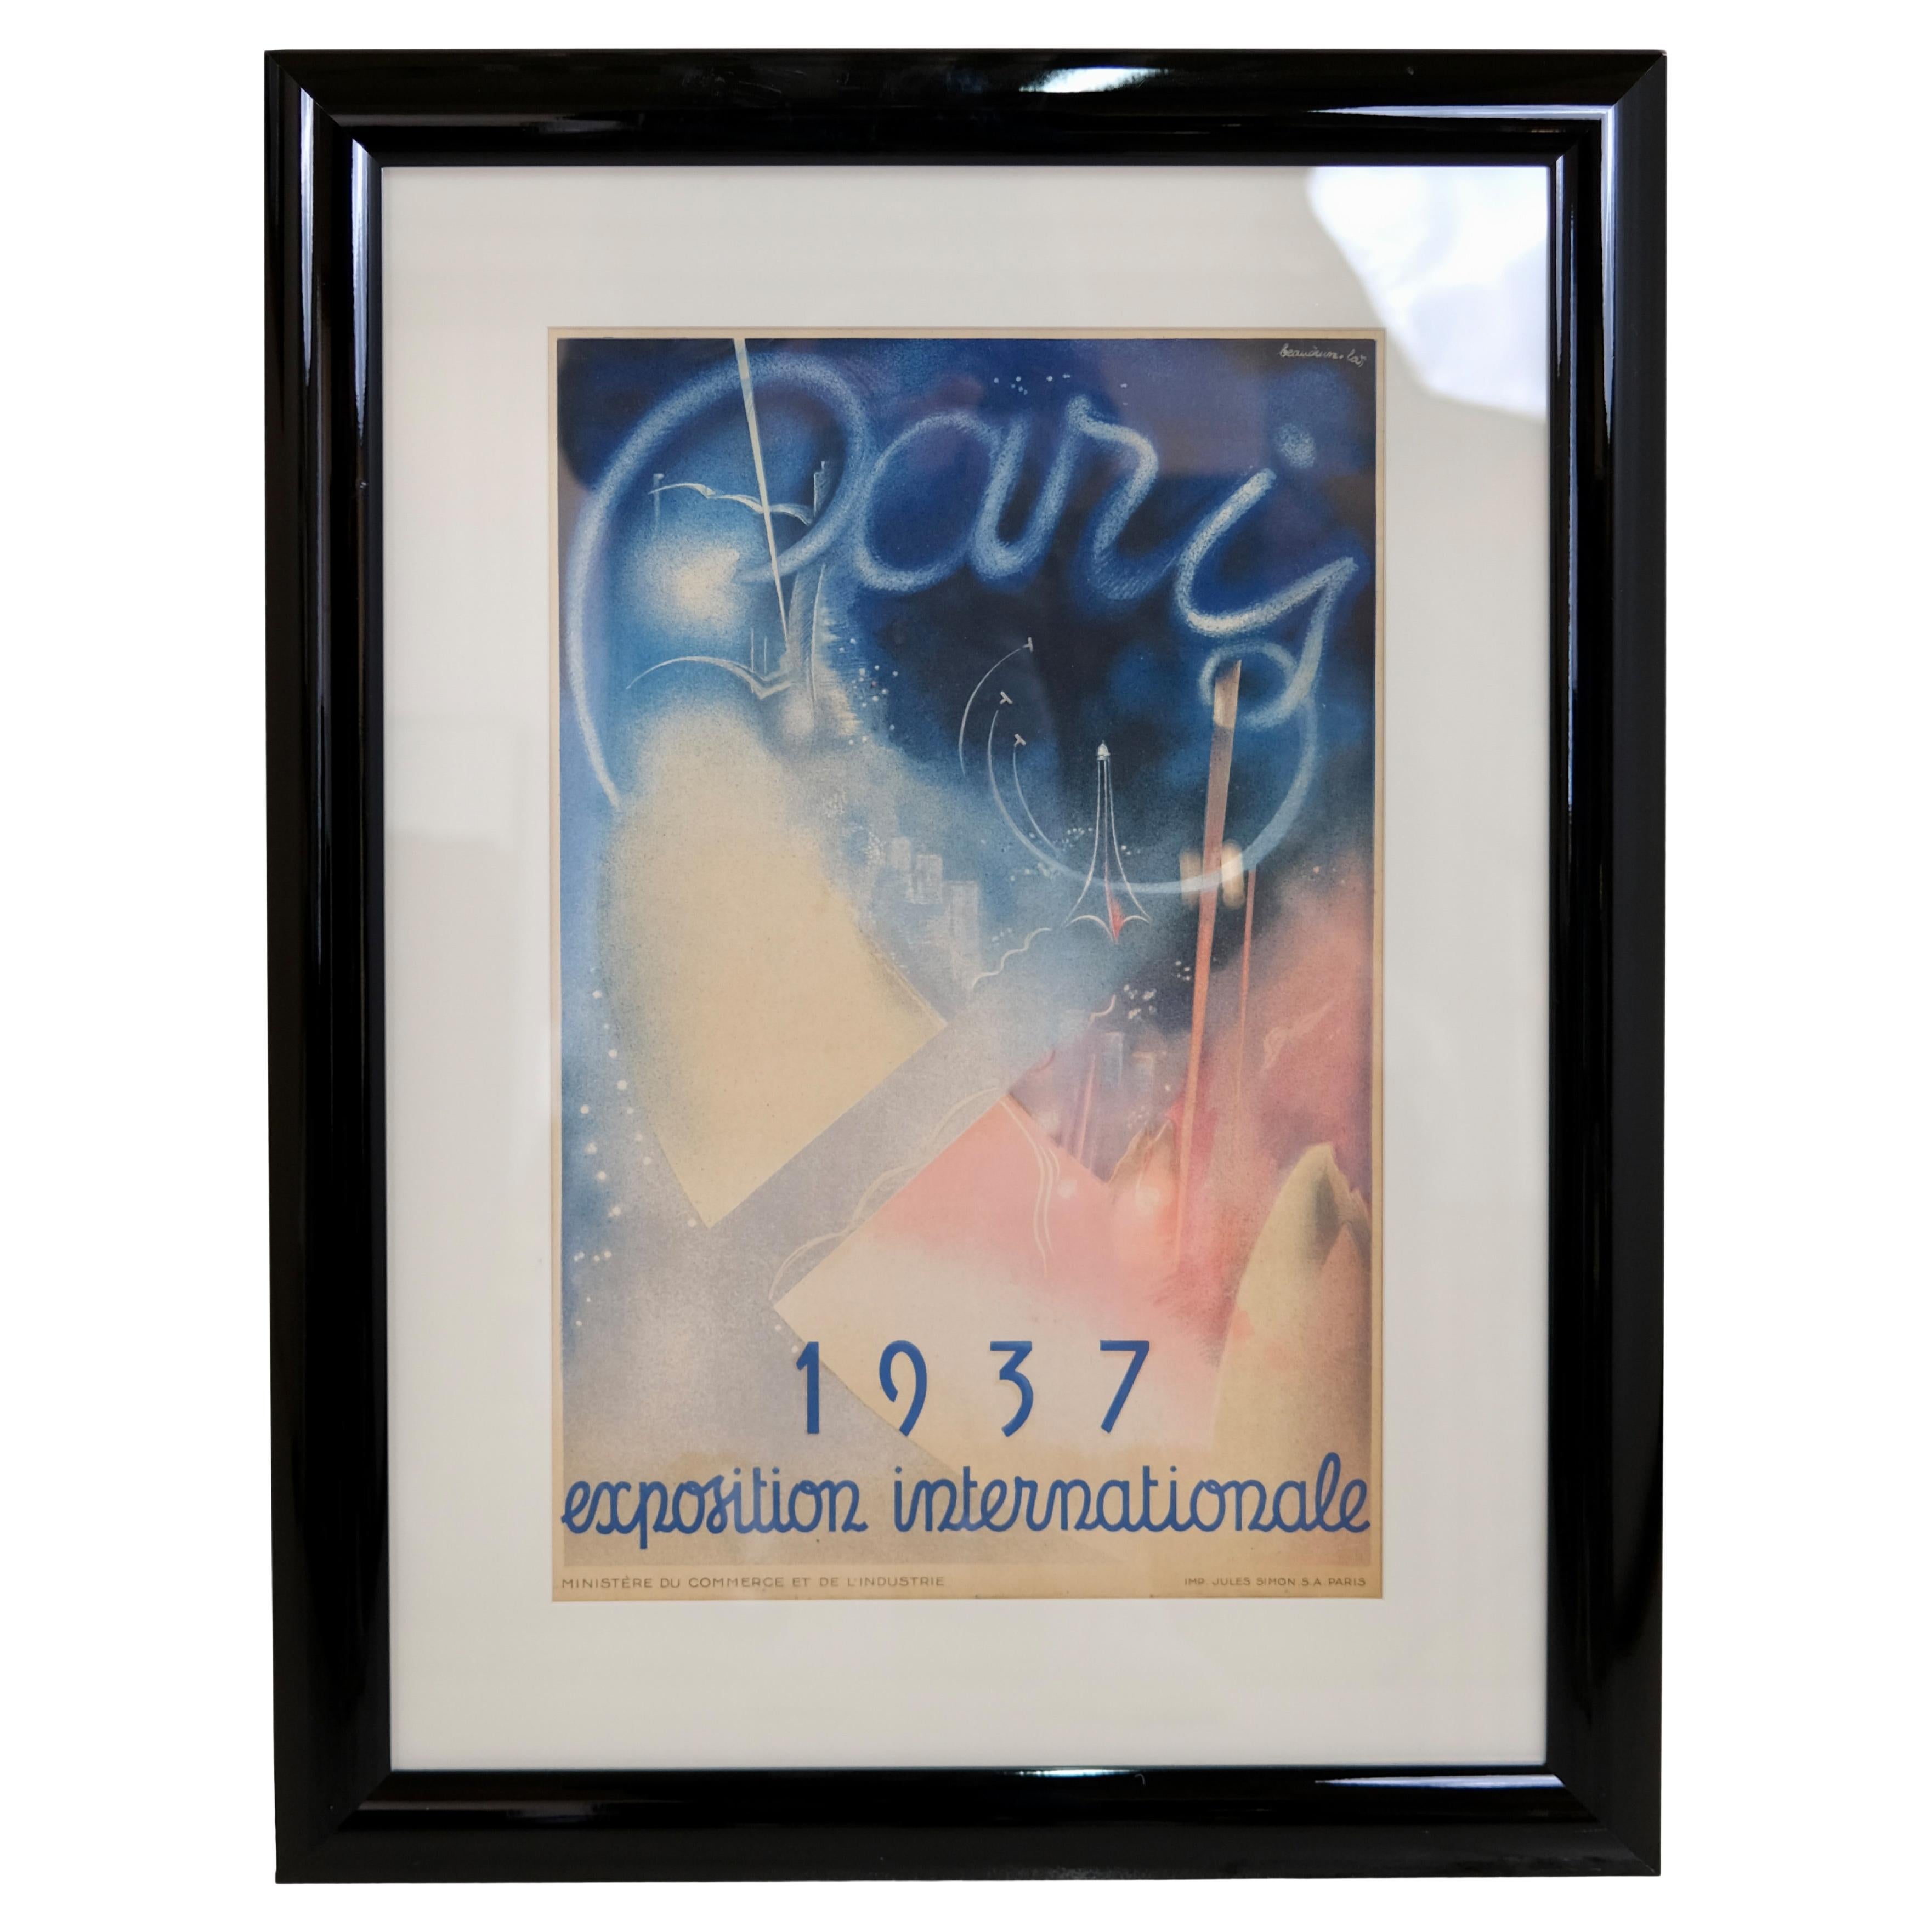 Gerahmtes Werbeplakat für die Weltausstellung 1937 in Paris 